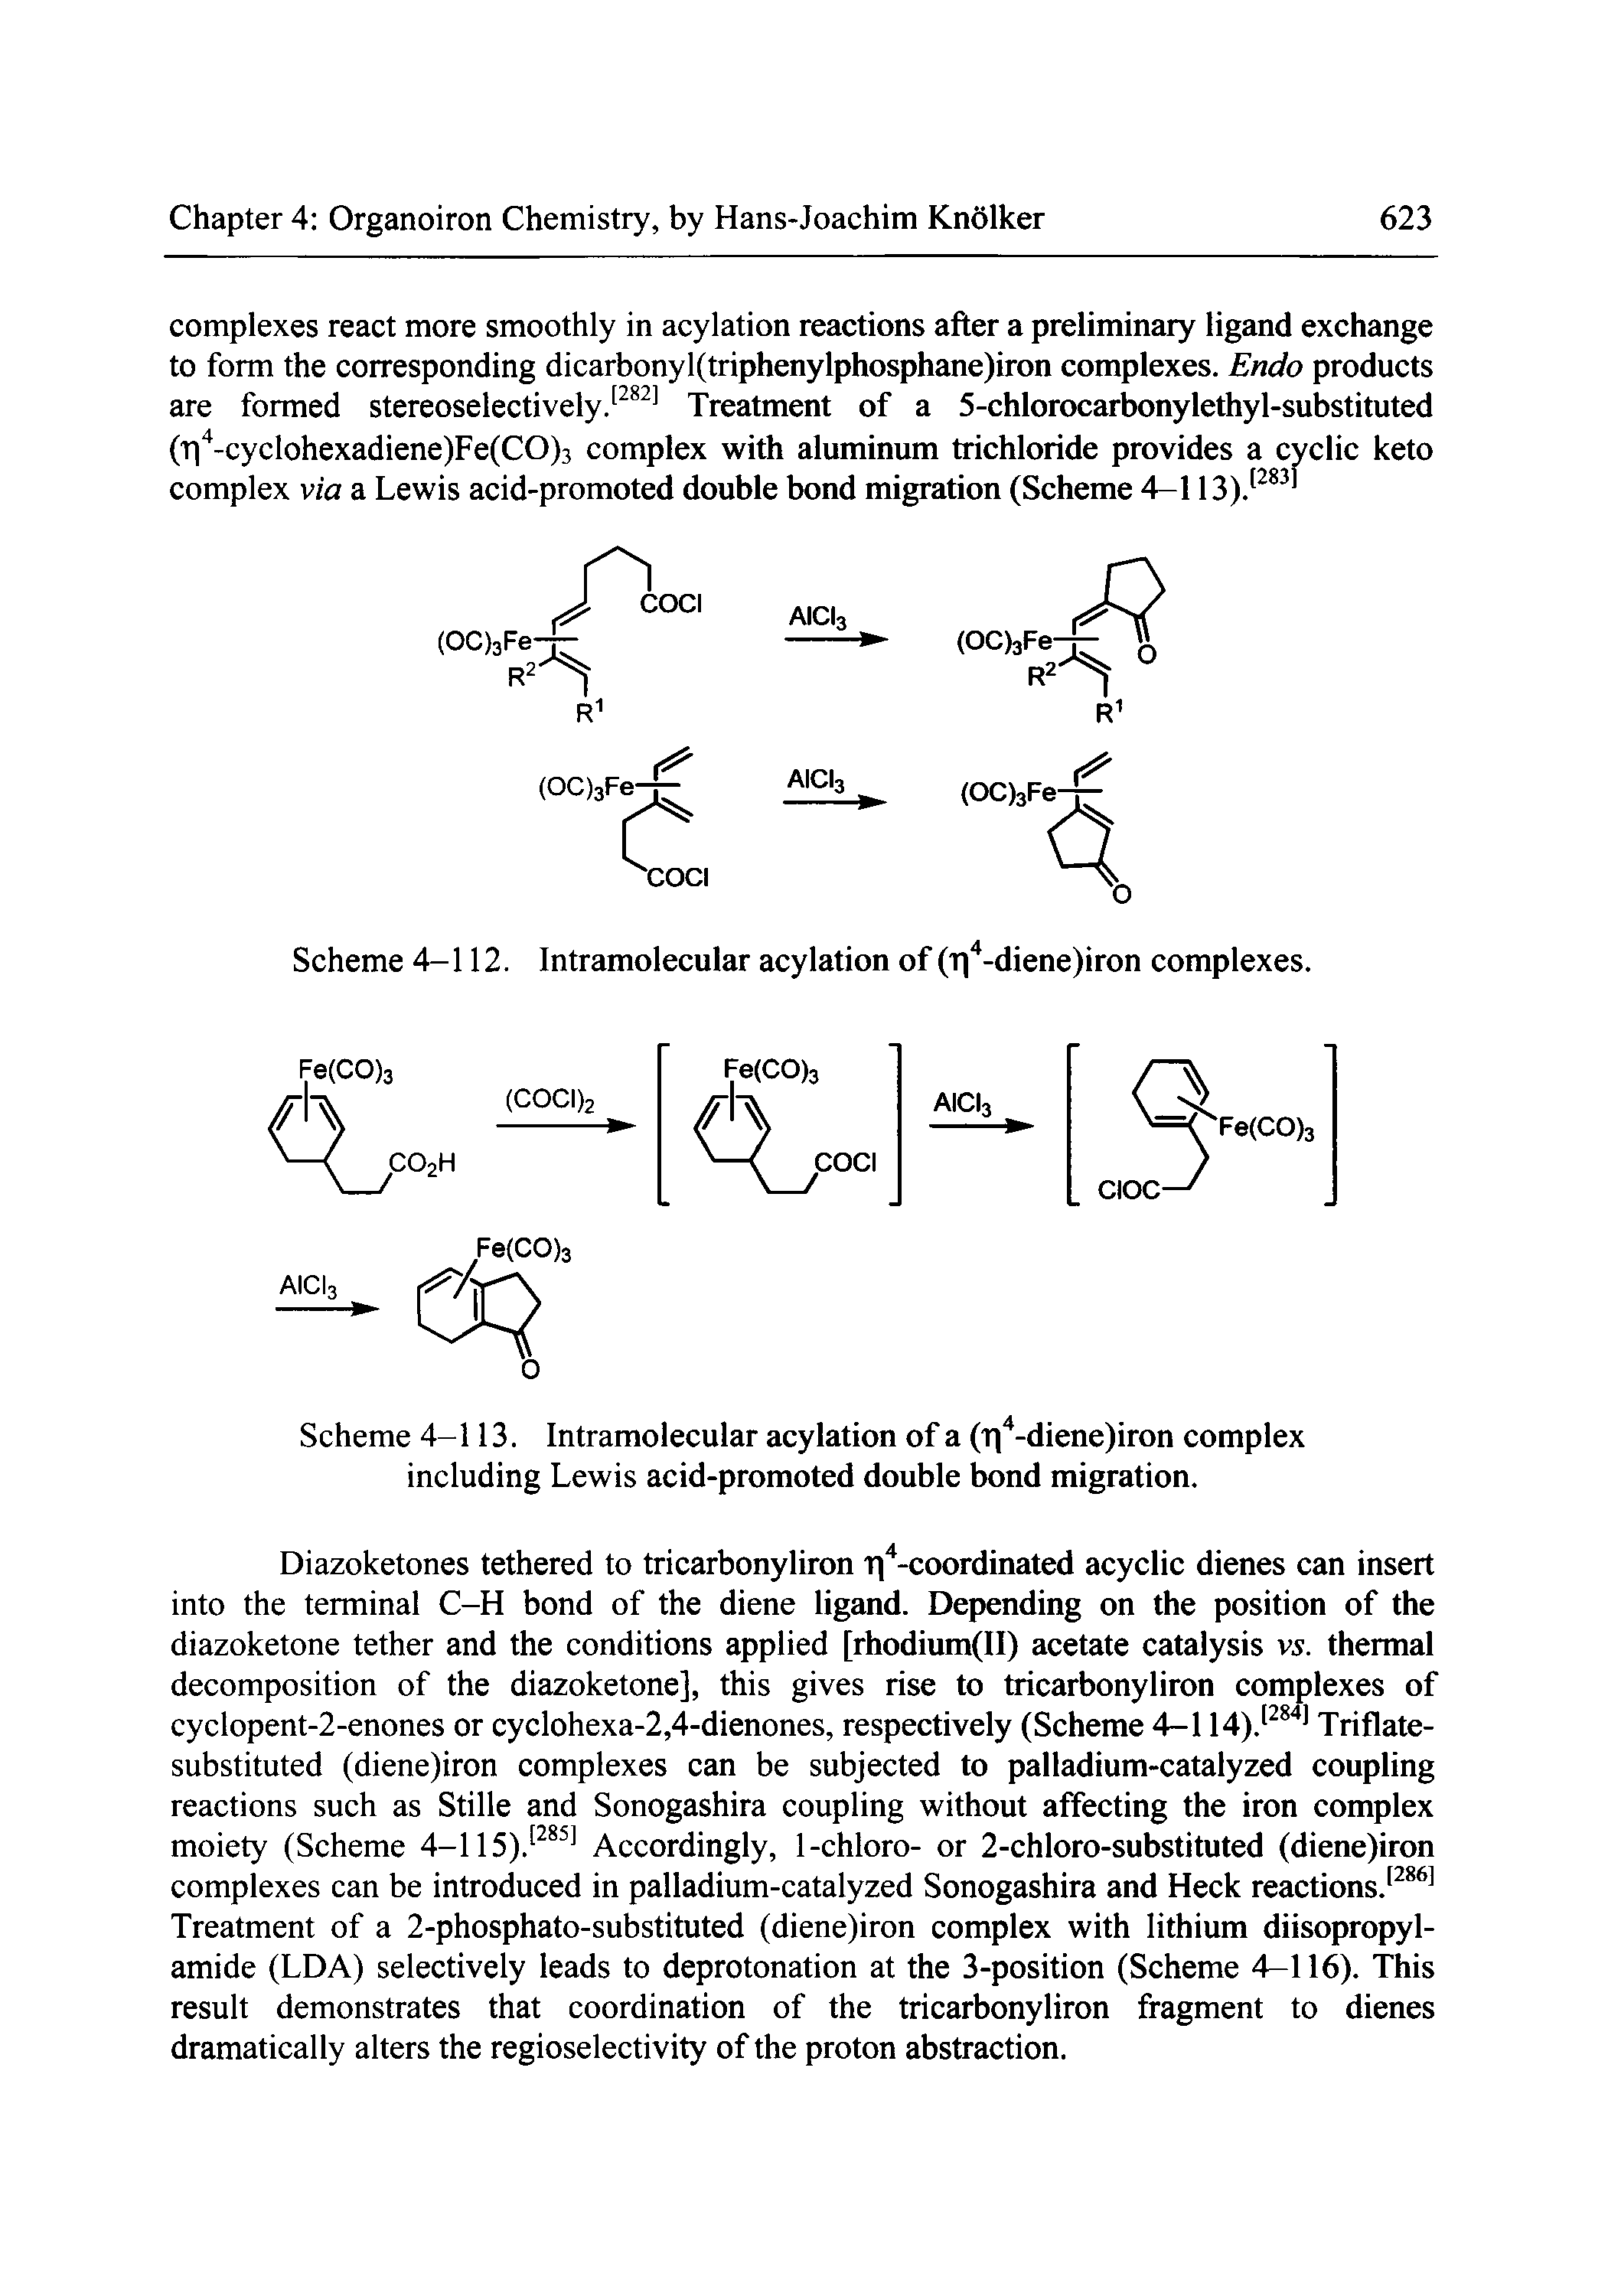 Scheme 4-112. Intramolecular acylation of (ii -diene)iron complexes.